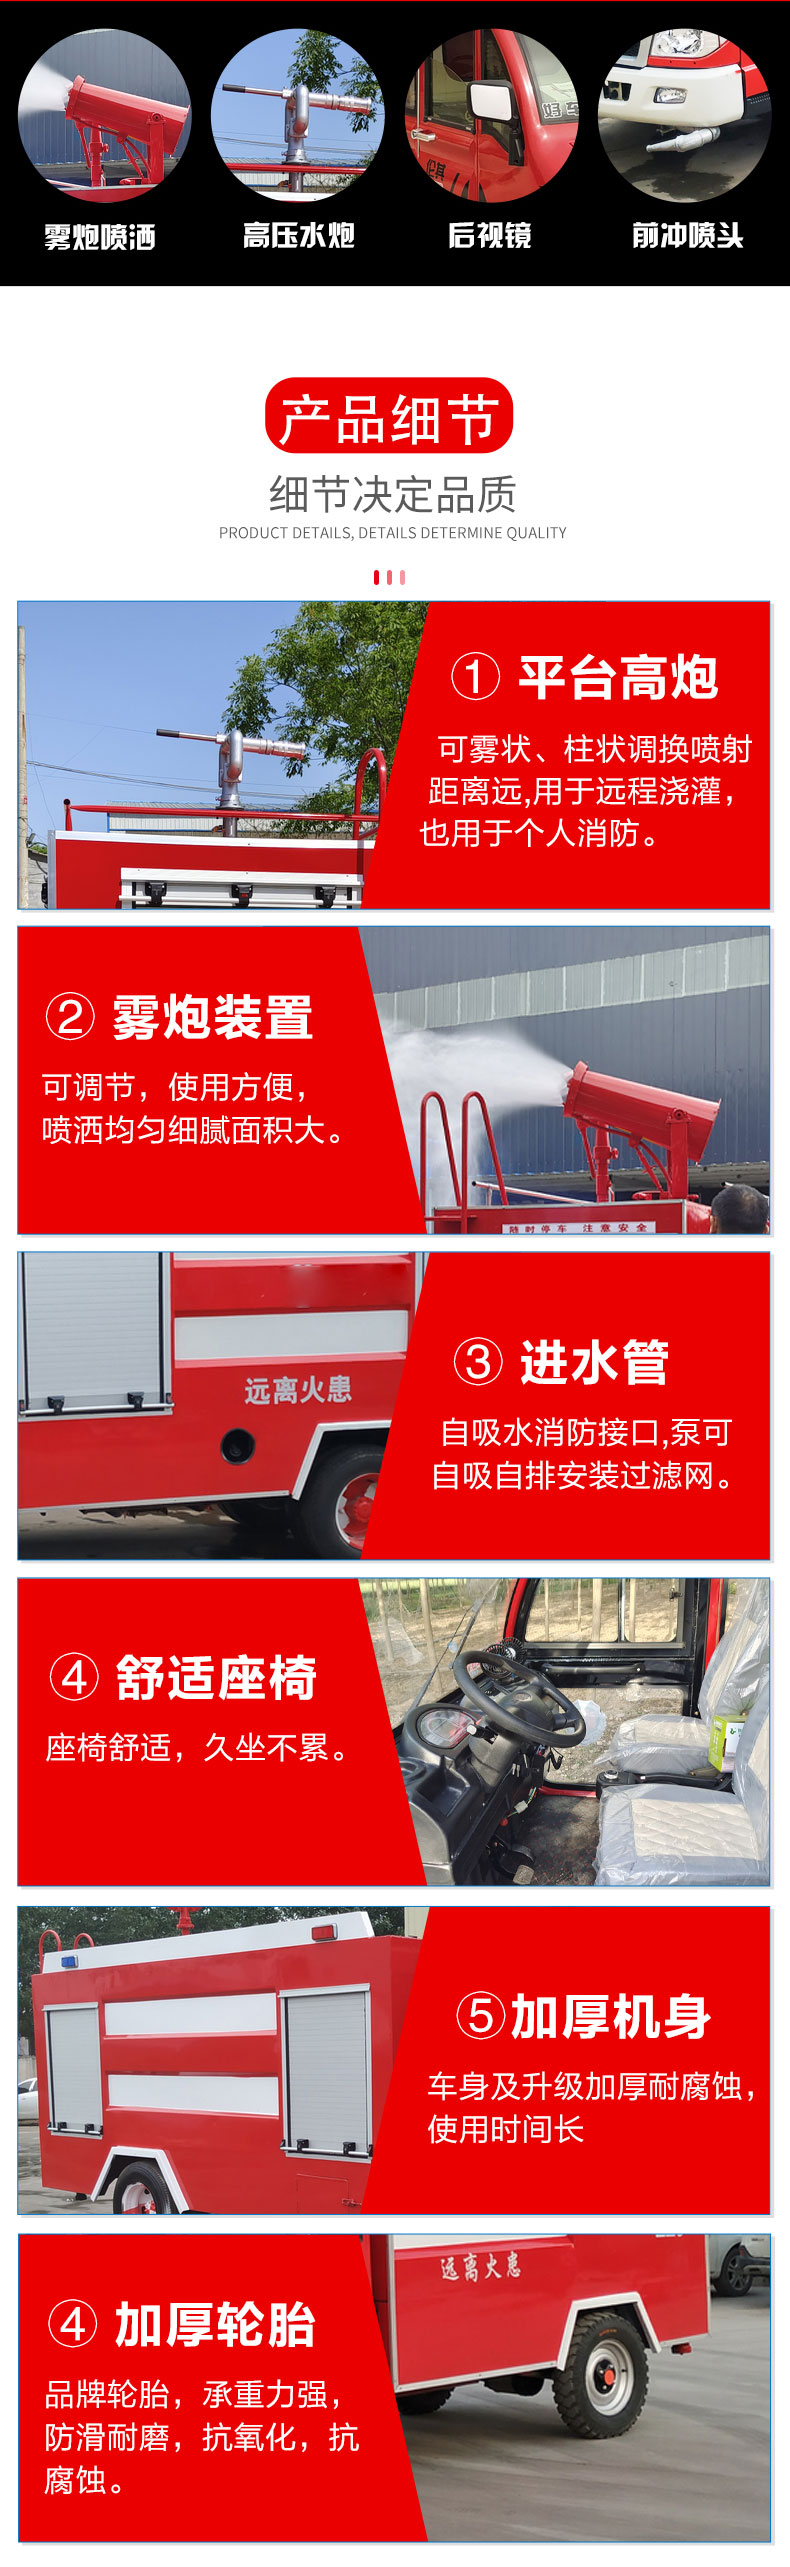 5立方福田救援水罐消防车型号YBX933民用厂区城镇森林多功能